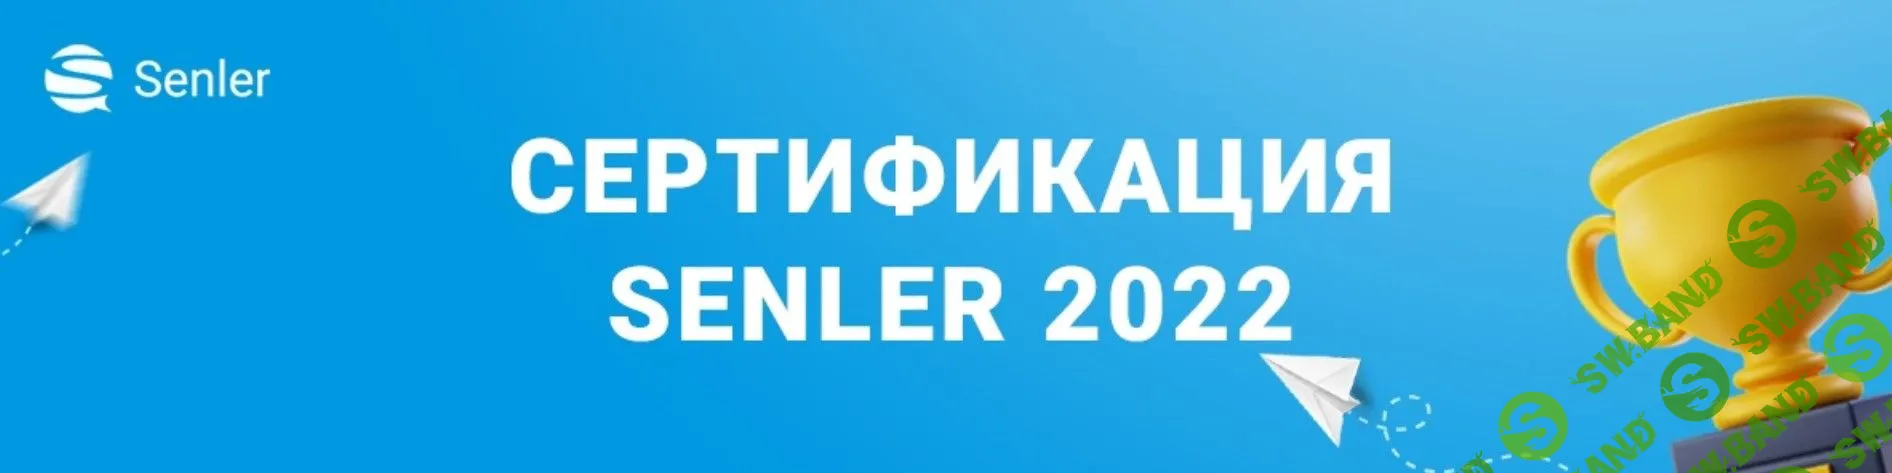 [Senler] Сертификация Senler (2022)